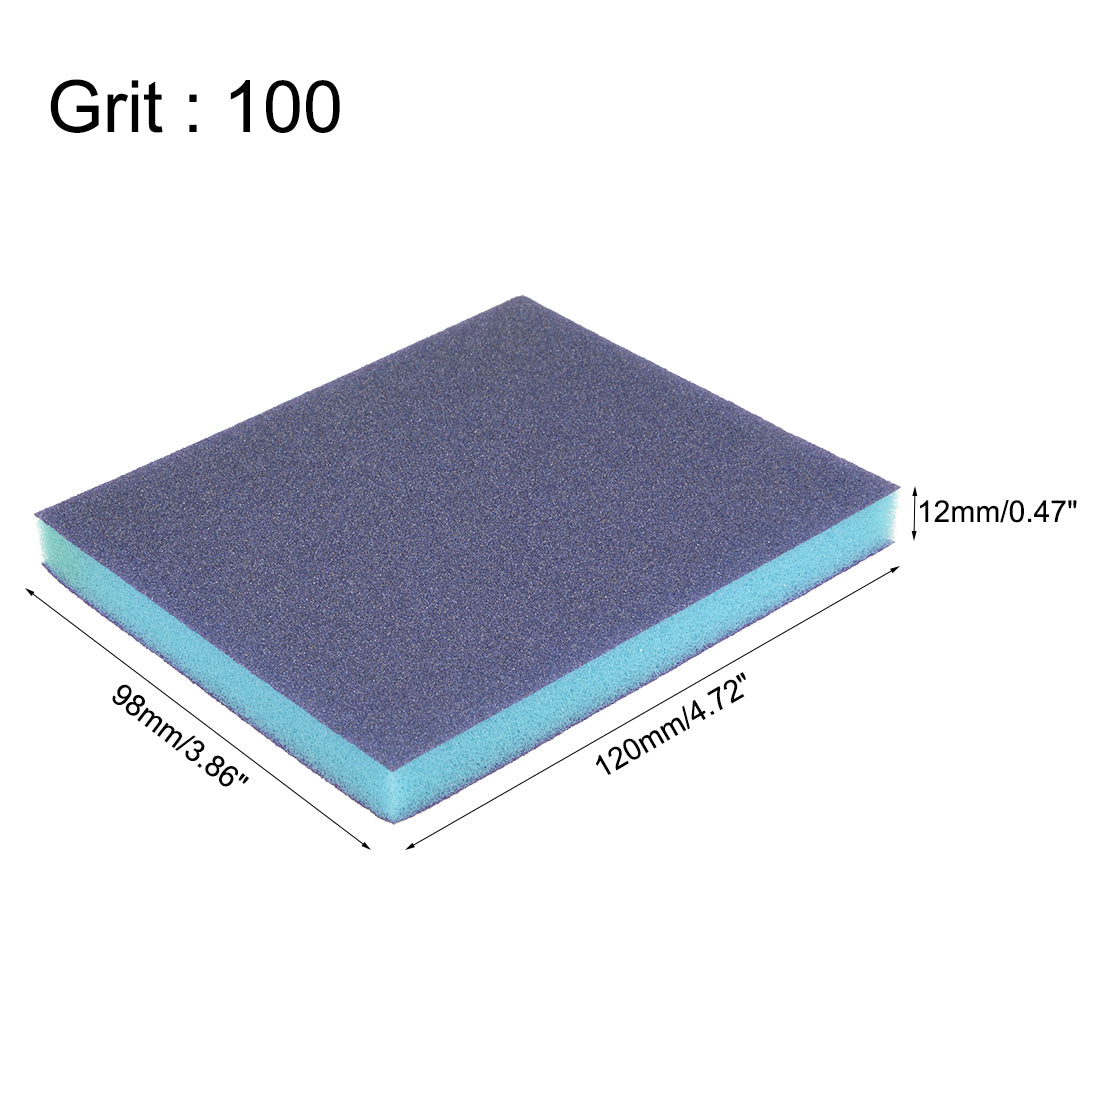 uxcell Uxcell Sanding Sponge, Coarse Grit 100 Grit Sanding Block Pad, 4.72" x 3.86" x 0.47" Size 12pcs